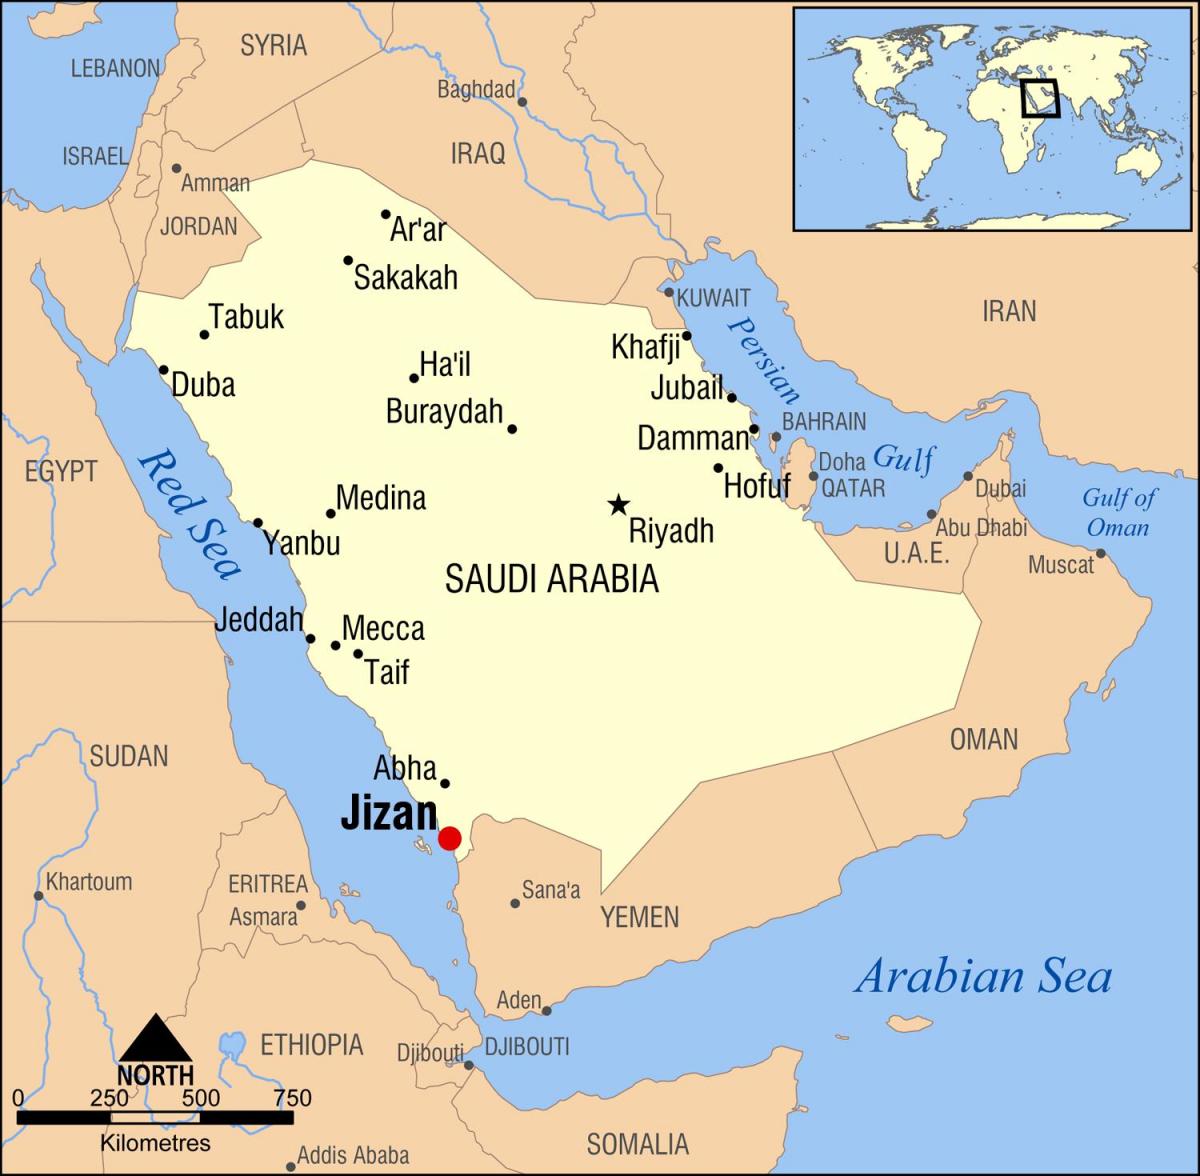 jizan KSA hartë